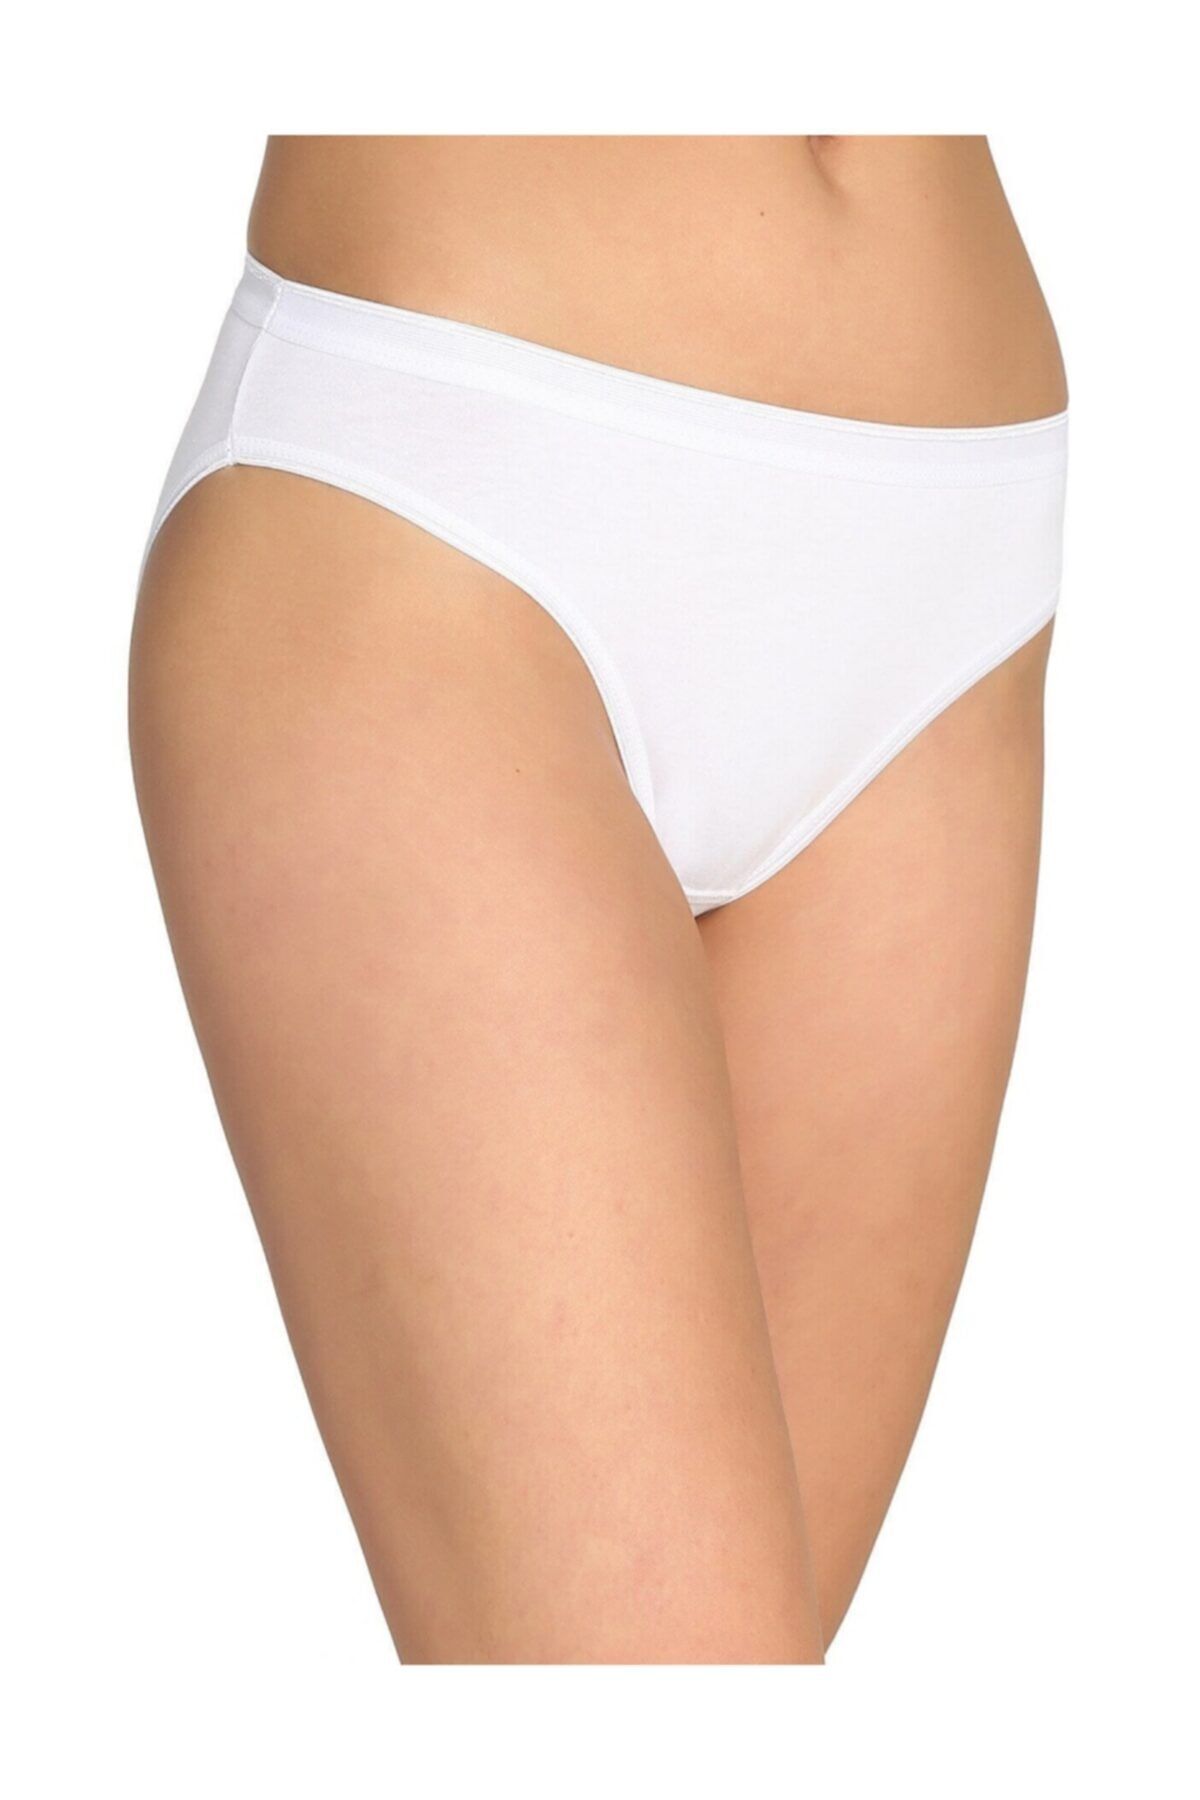 Tutku Kadın 6'lı Paket Bikini Slip Külot (beyaz)